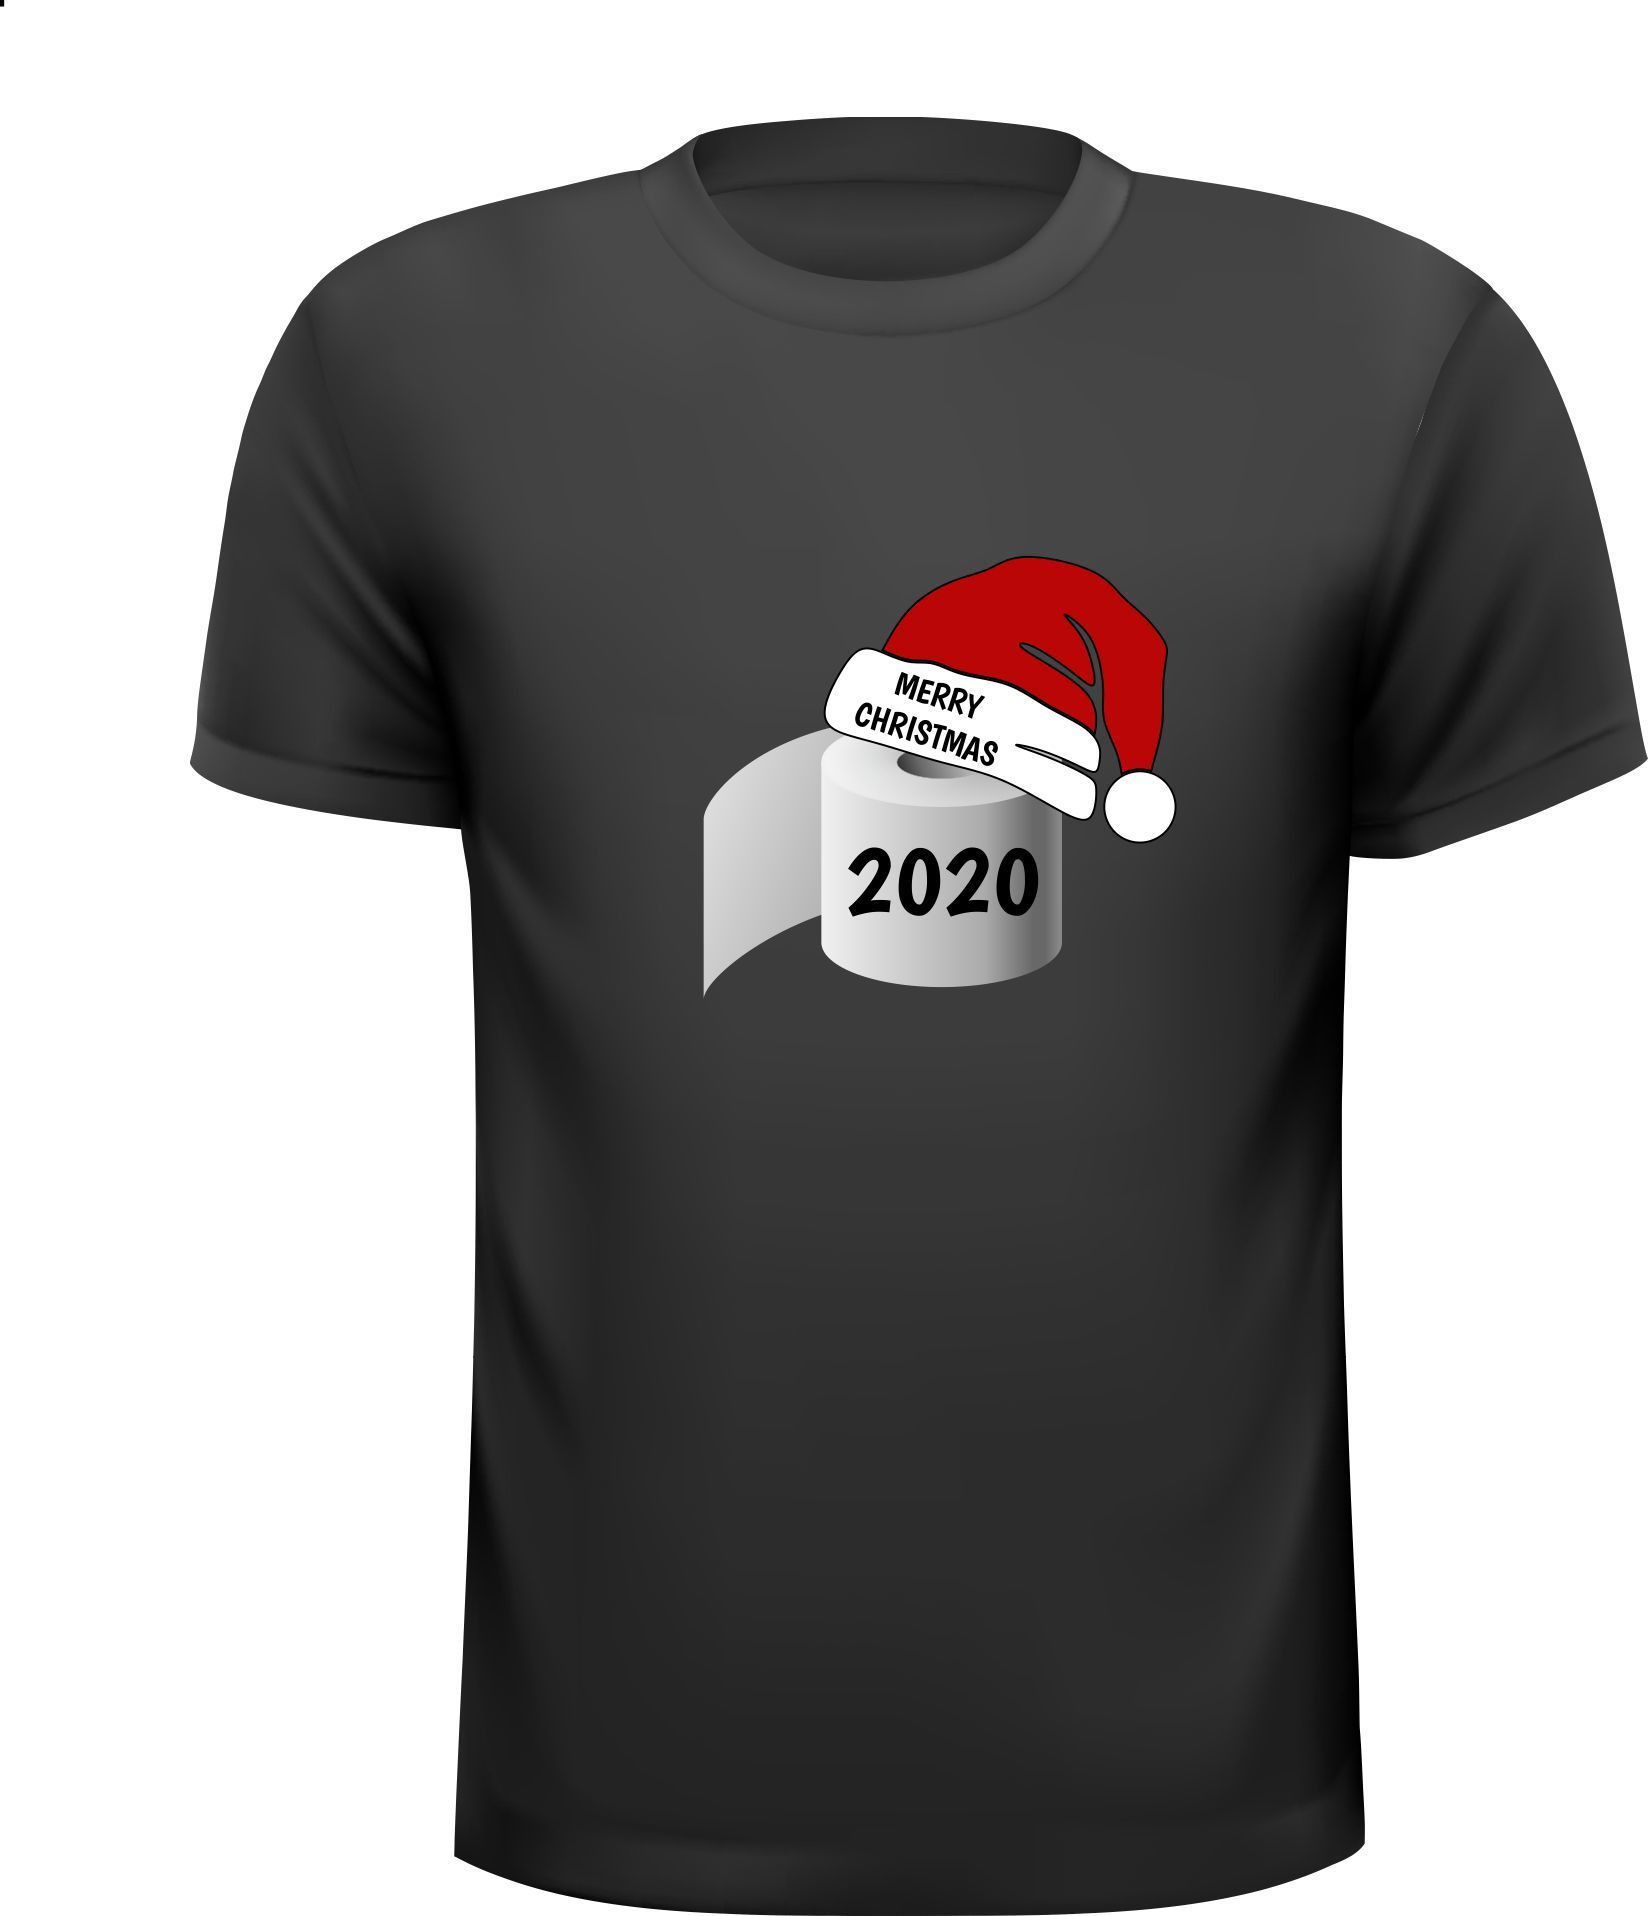 T-shirt Merry Christmas 2020 wc papier wc rollen corona wat een jaar vrolijk grappig